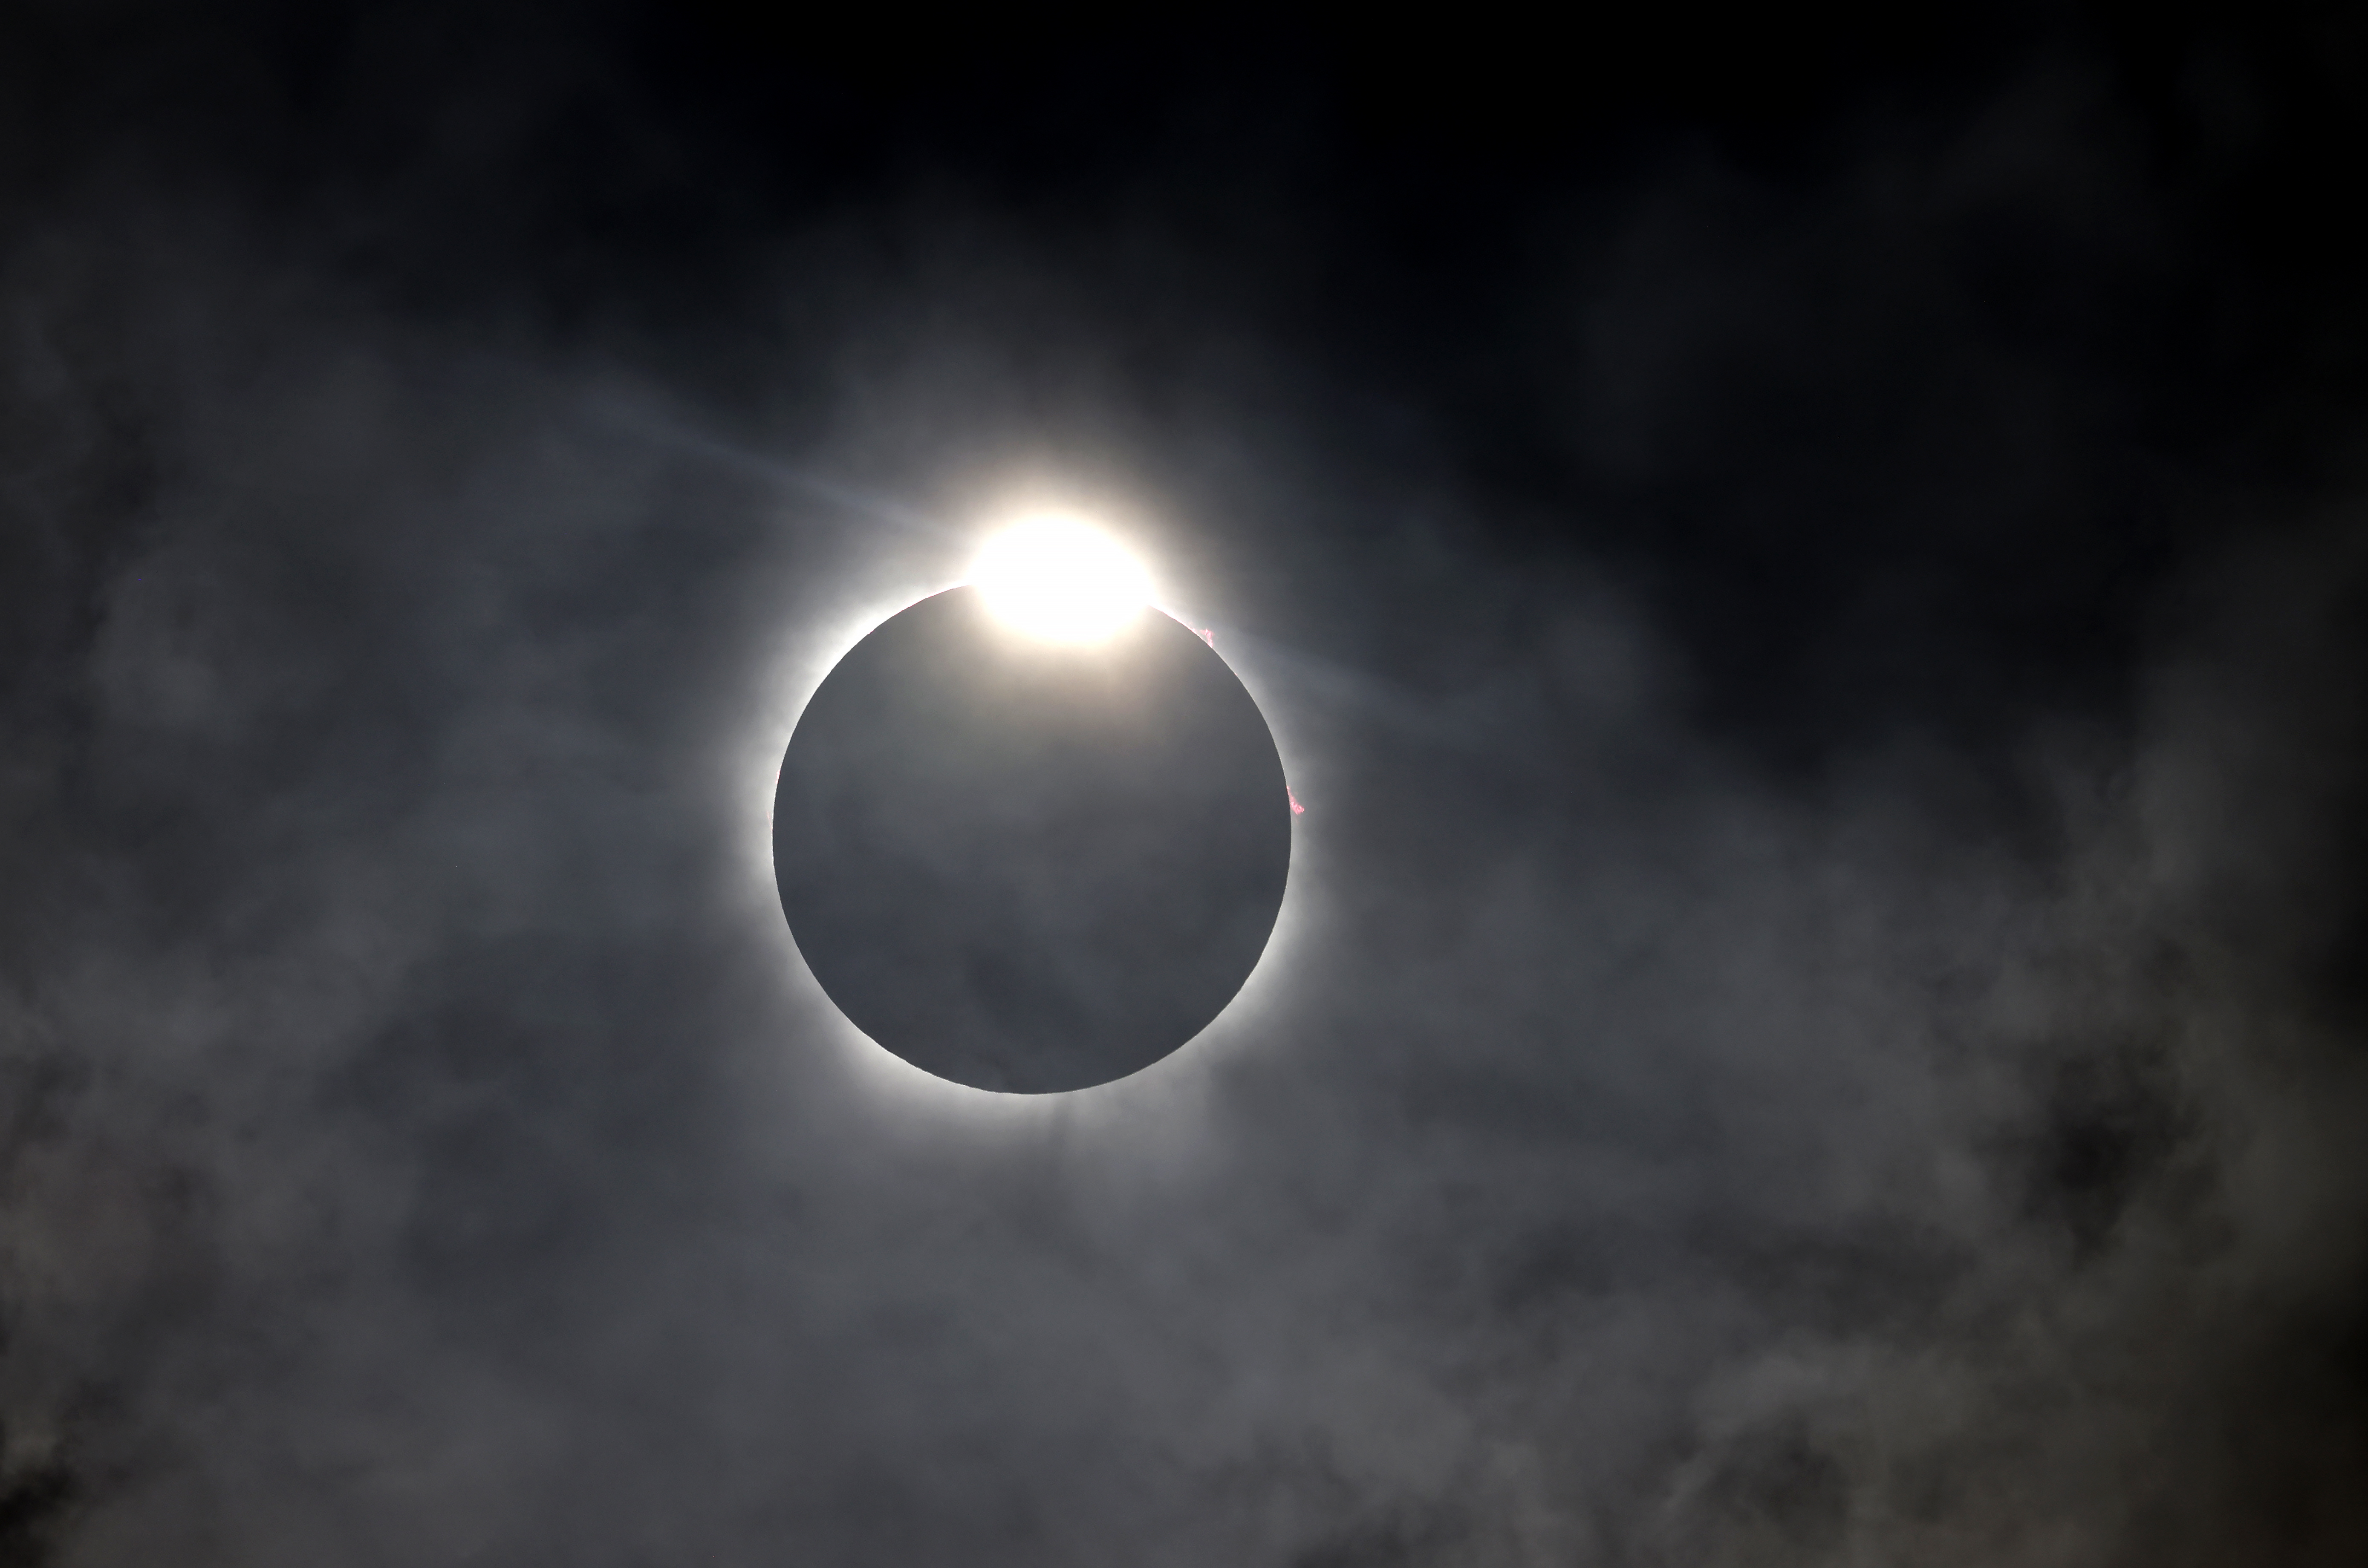 다이아몬드 반지 효과는 달이 태양을 가리는 텍사스주 포트워스 위에서 볼 수 있습니다.